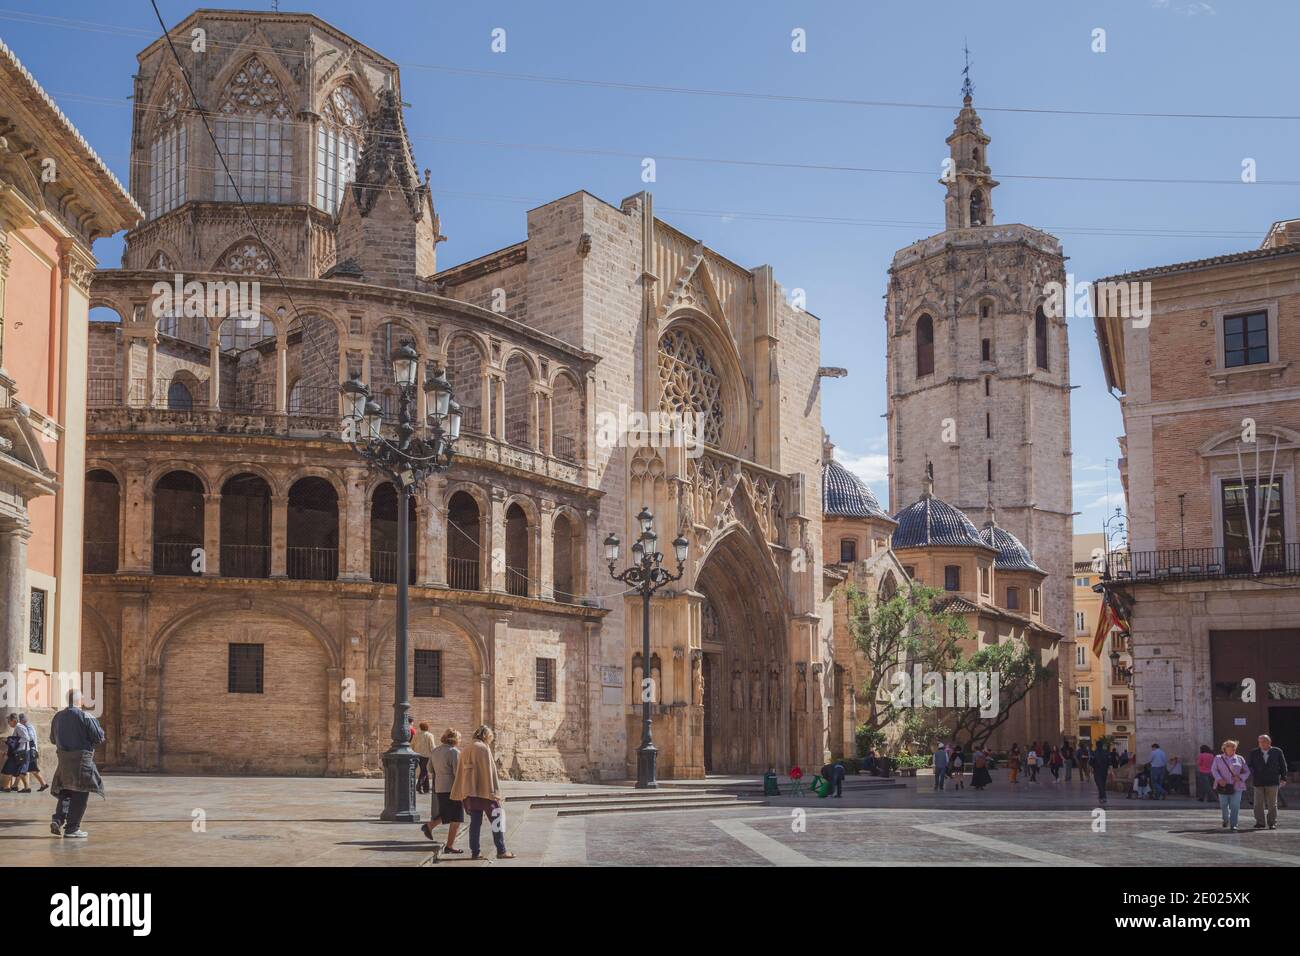 Valence, Espagne - avril 16 2015 : les touristes profitent d'une journée ensoleillée sur la Plaza de la Virgen, la place principale historique de Valence, Espagne Banque D'Images